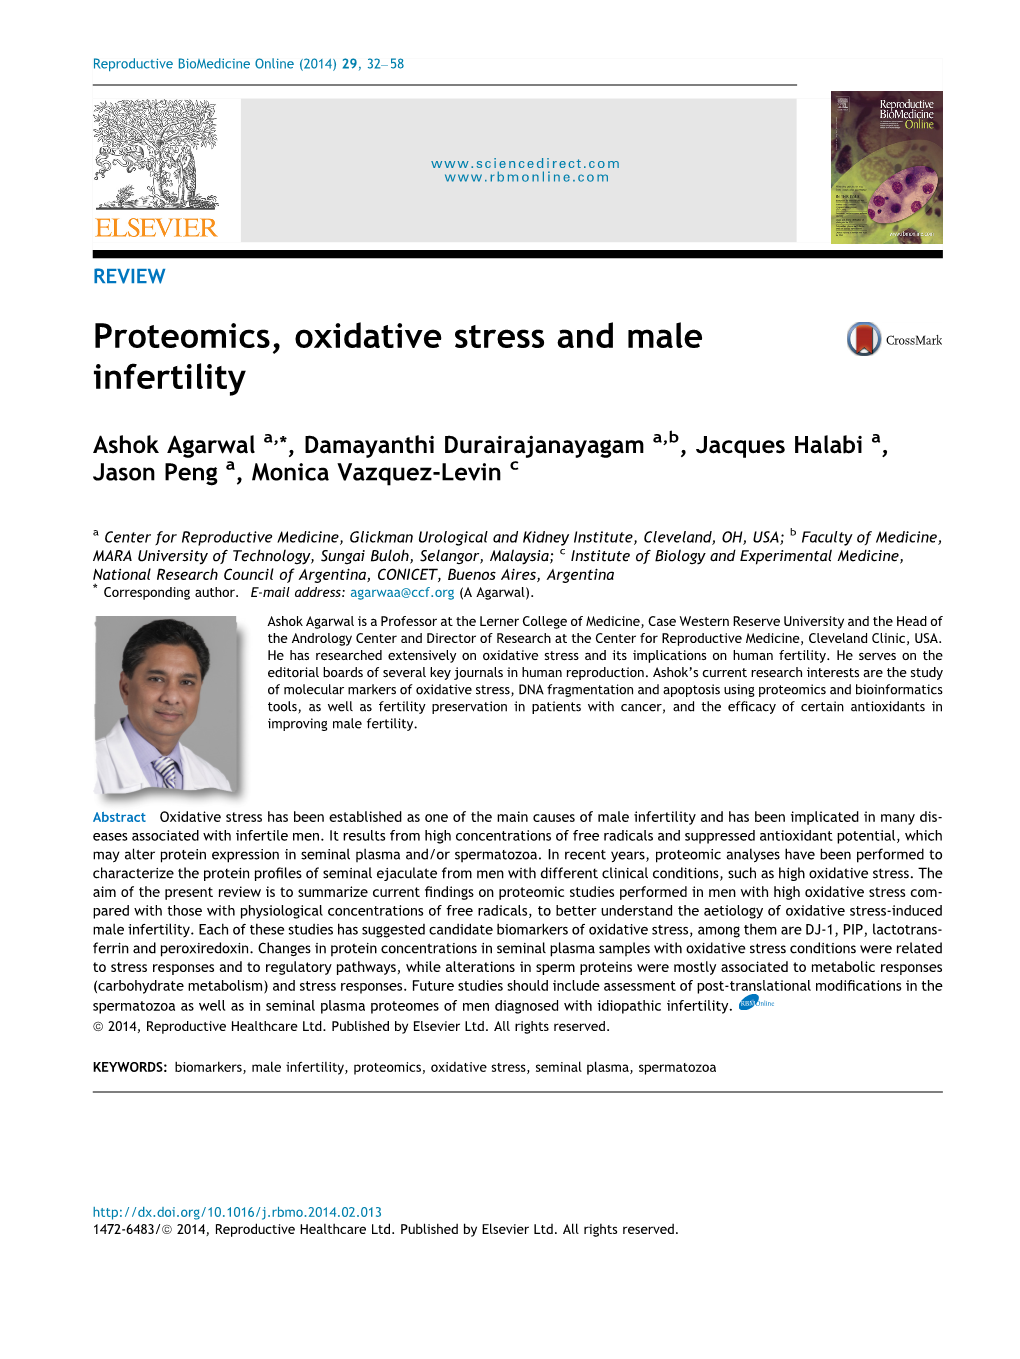 Proteomics, Oxidative Stress and Male Infertility